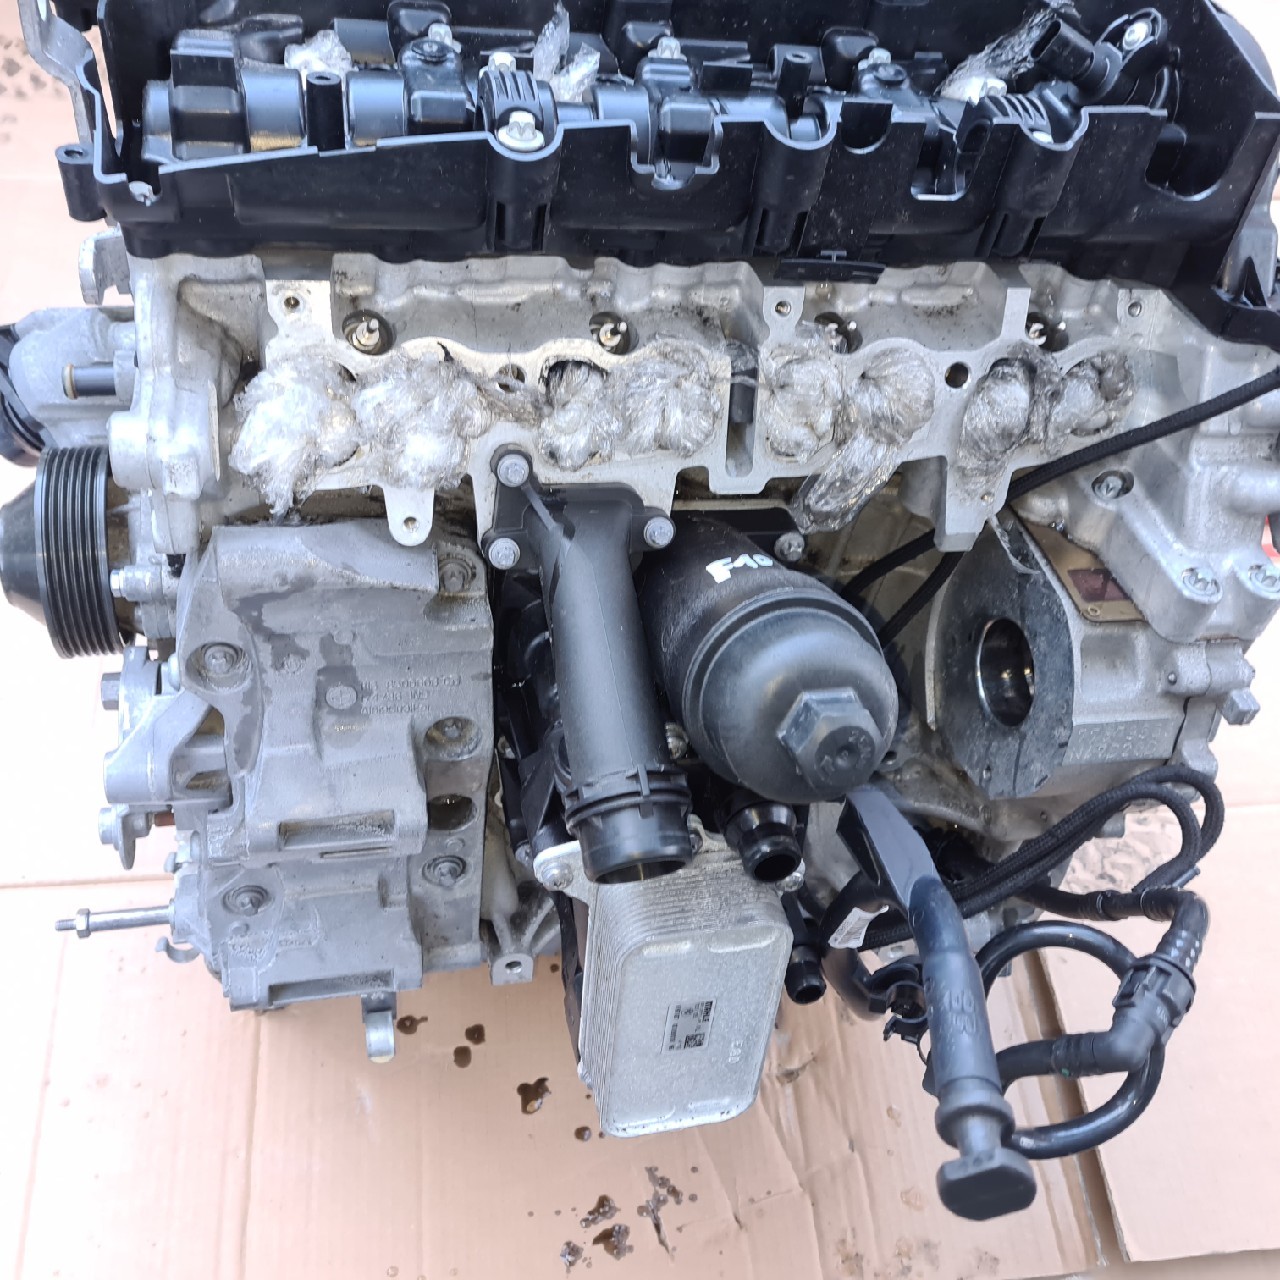 Engine bmw f10 525d n47 d20d 218km - Online car parts ❱ XDALYS